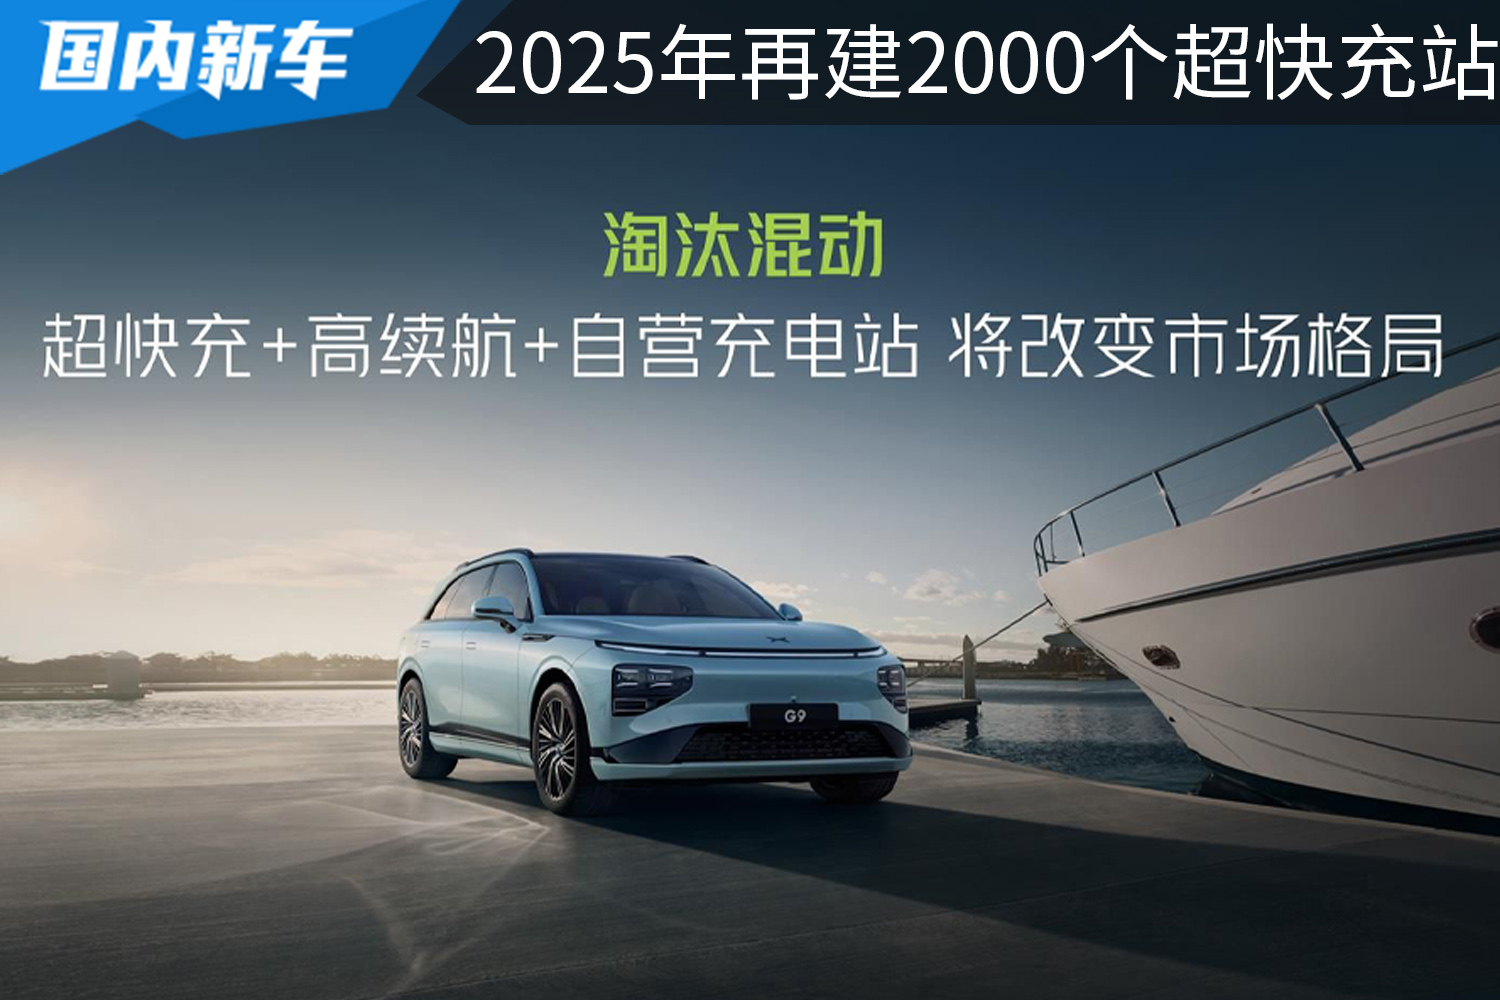 小鹏有望2025年再建2000个超快充站